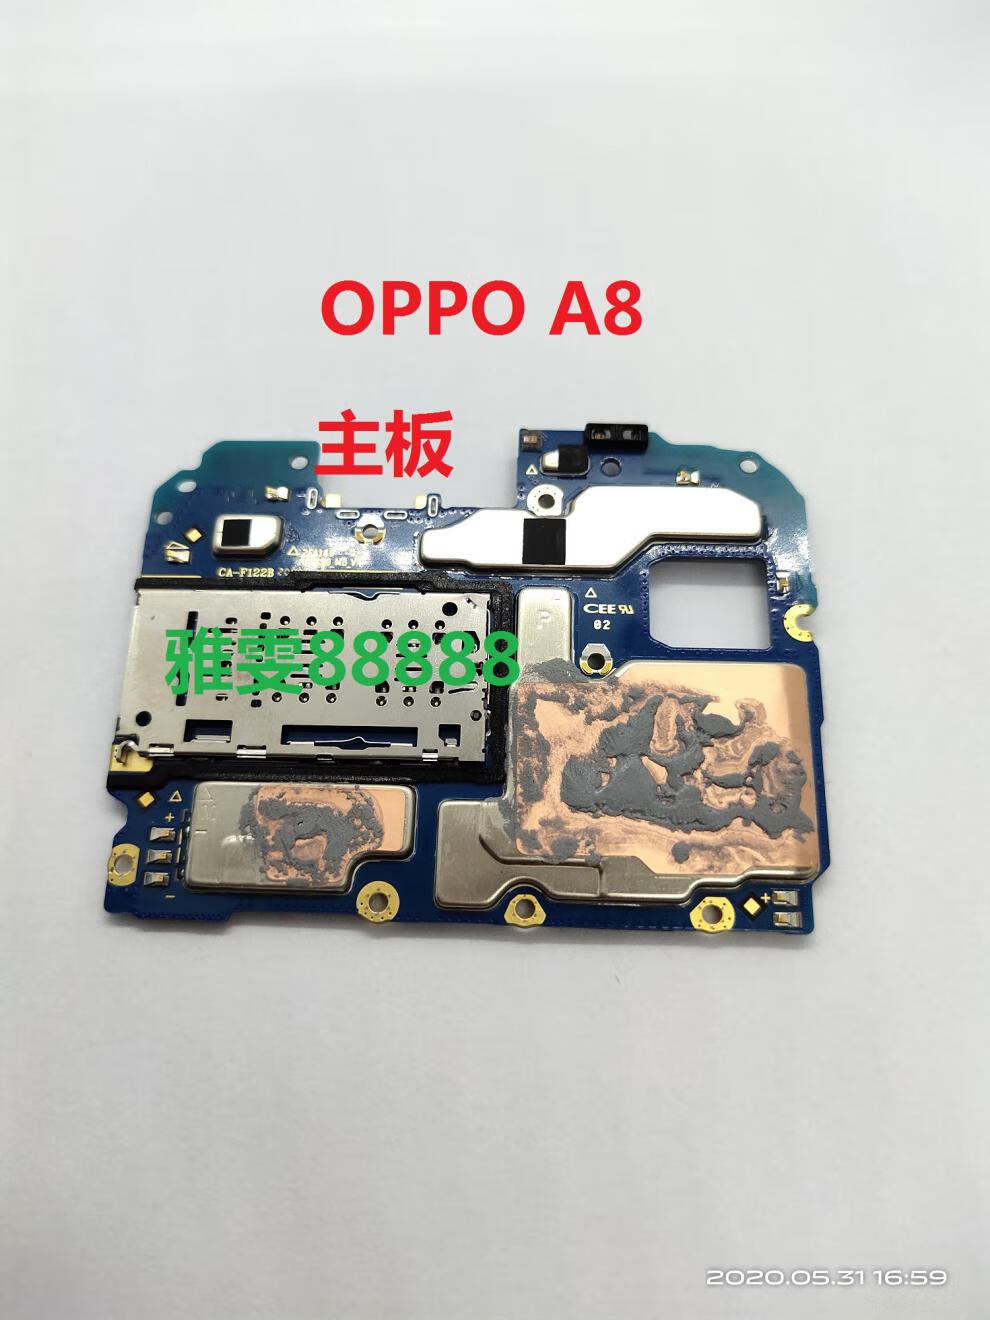 oppoa9主板元件分布图图片